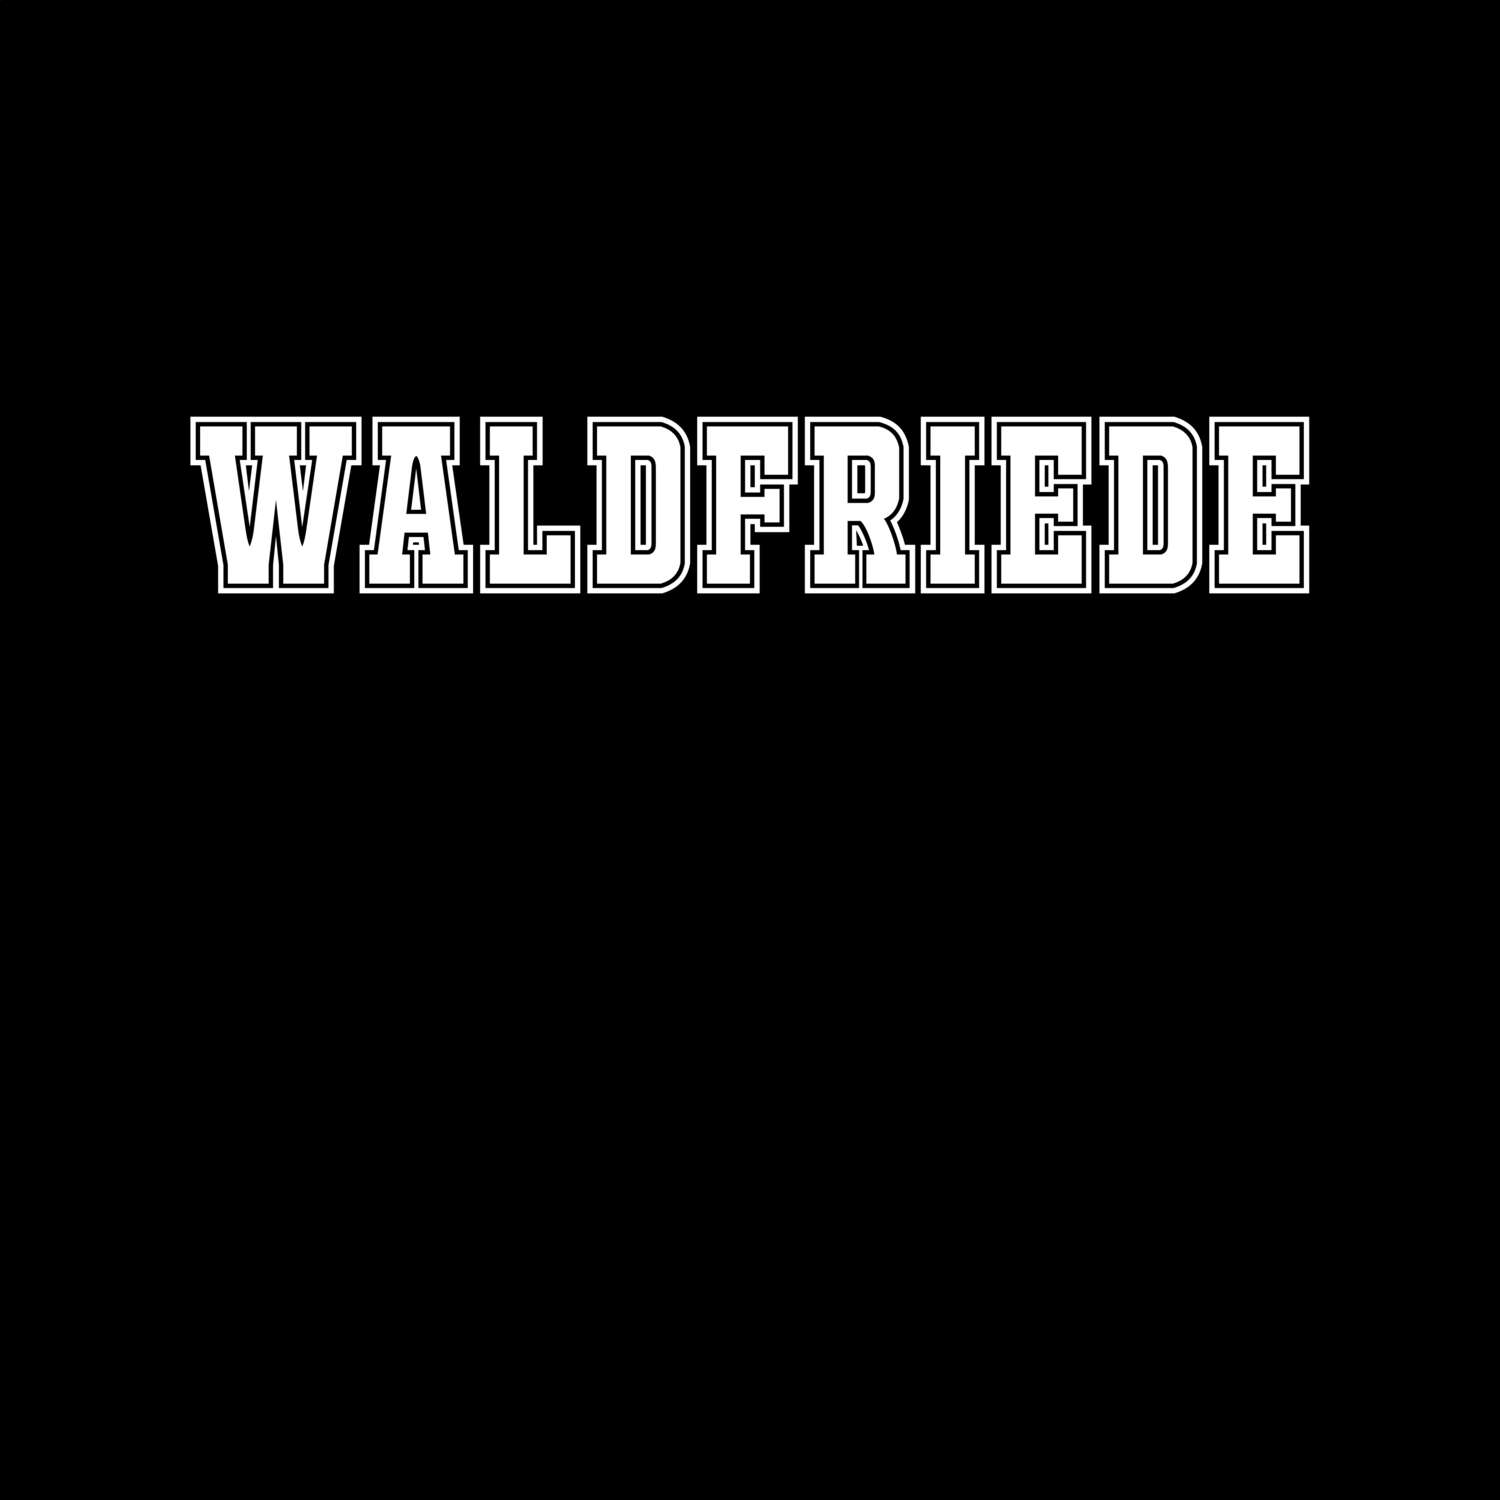 Waldfriede T-Shirt »Classic«